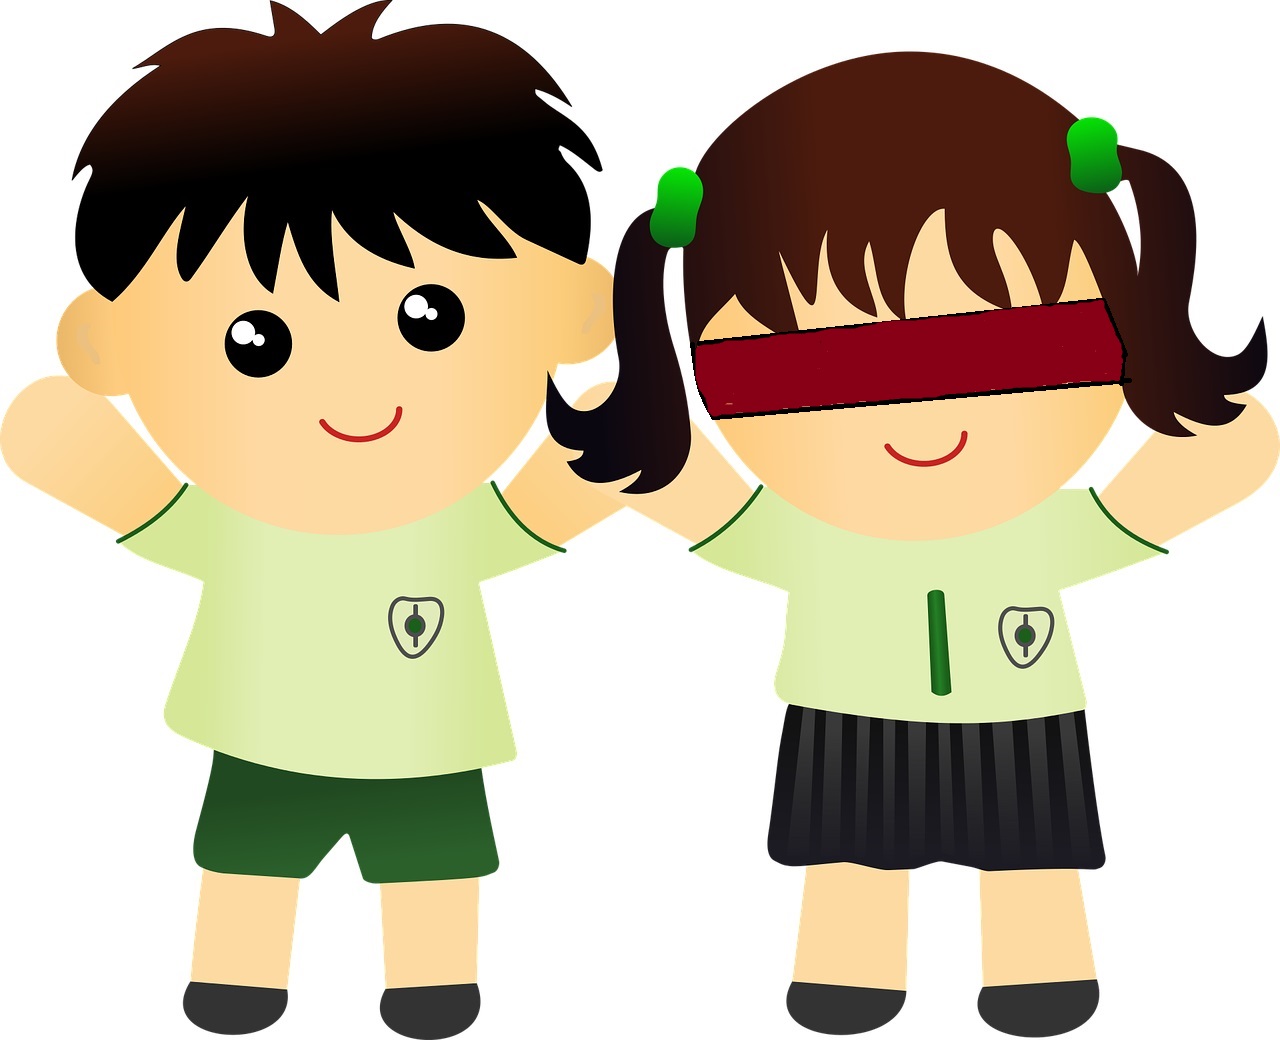 La imagen muestra un niño y una niña con uniforme de colegio, cogidos de la mano, y la niña lleva los ojos vendados